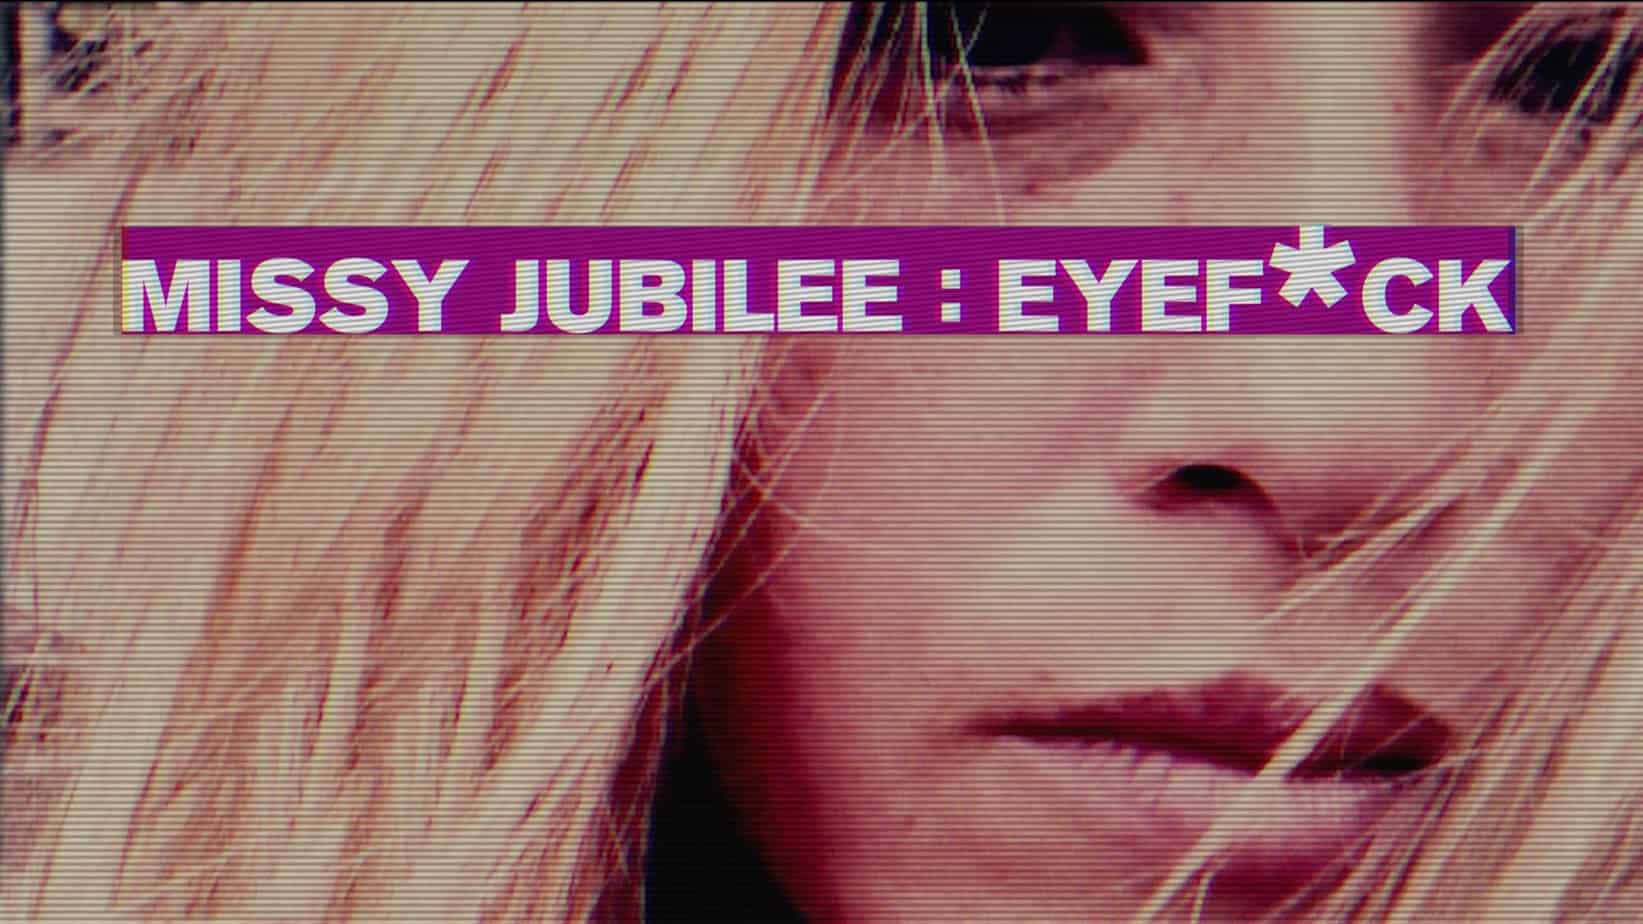 Missy Jubilee 120 EYEFUCK film release poster